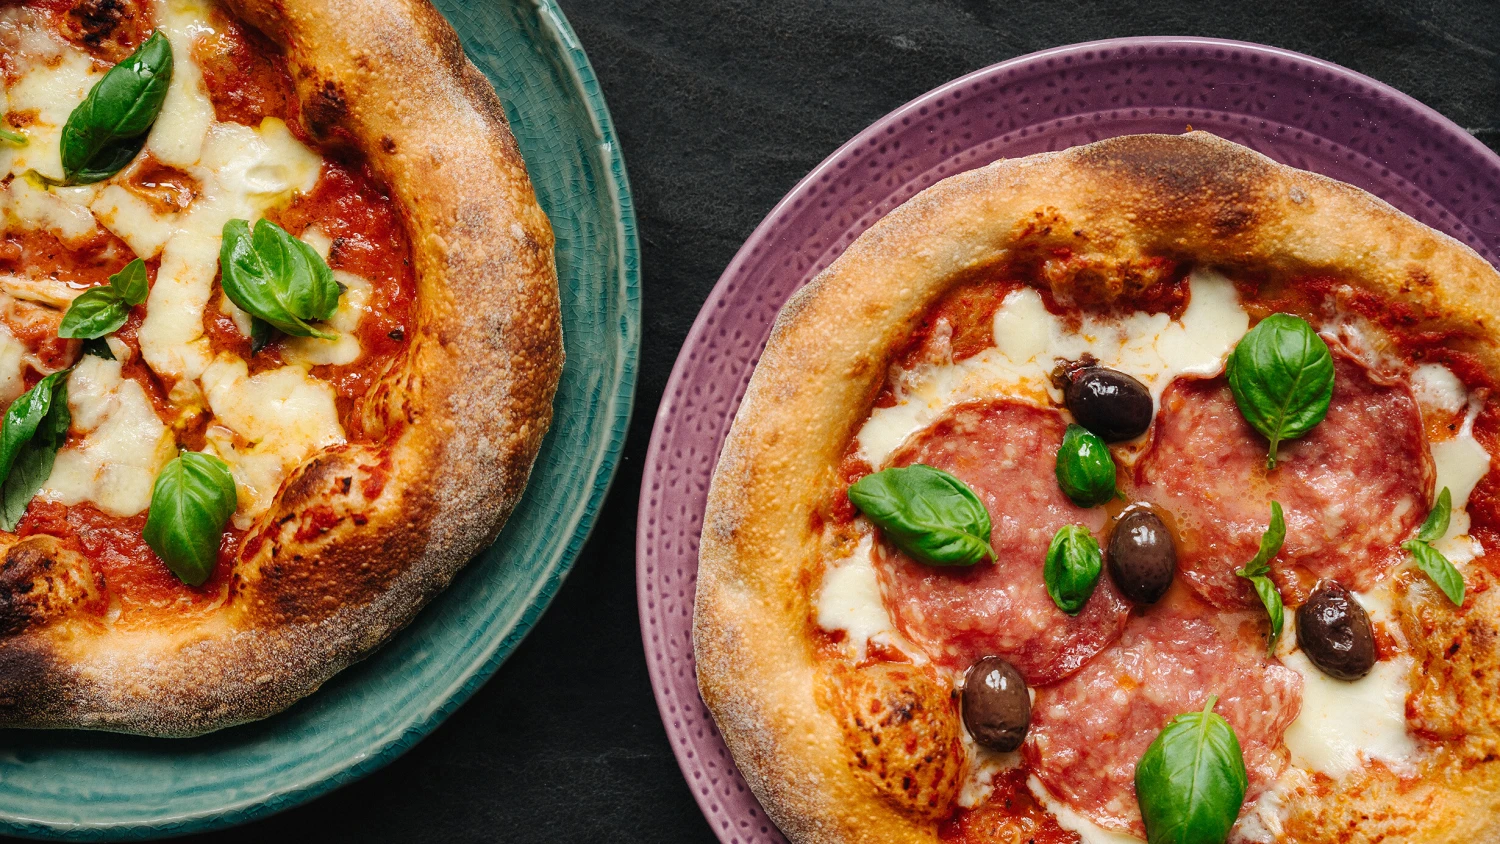 Škola vaření: domácí pizza skutečně lepší než z pizzerie